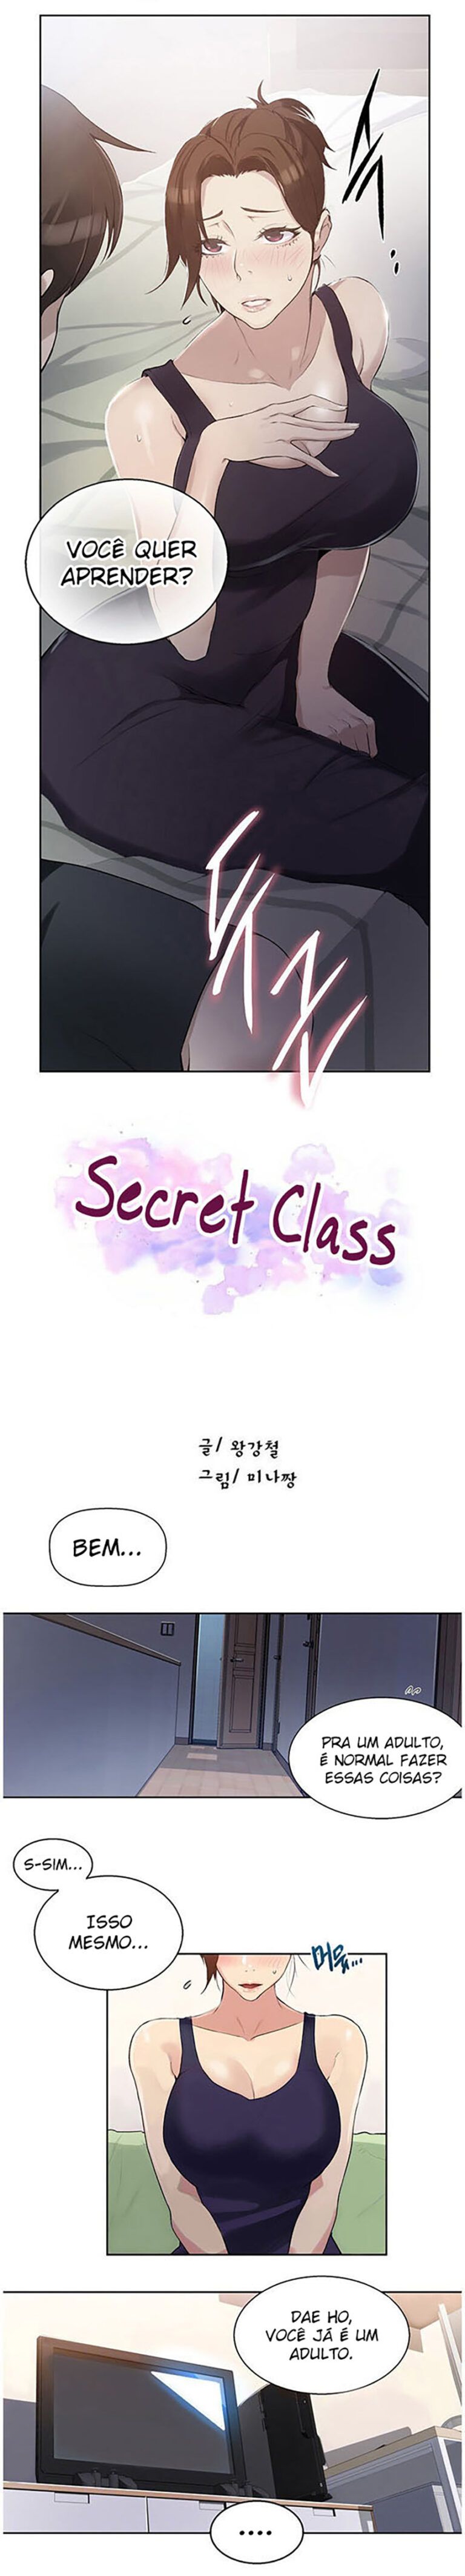 Тайны обучения манга читать. Secret class manhwa 18. Манга Secret class. Манхва тайное обучение на английском. Читать мангу Secret class.